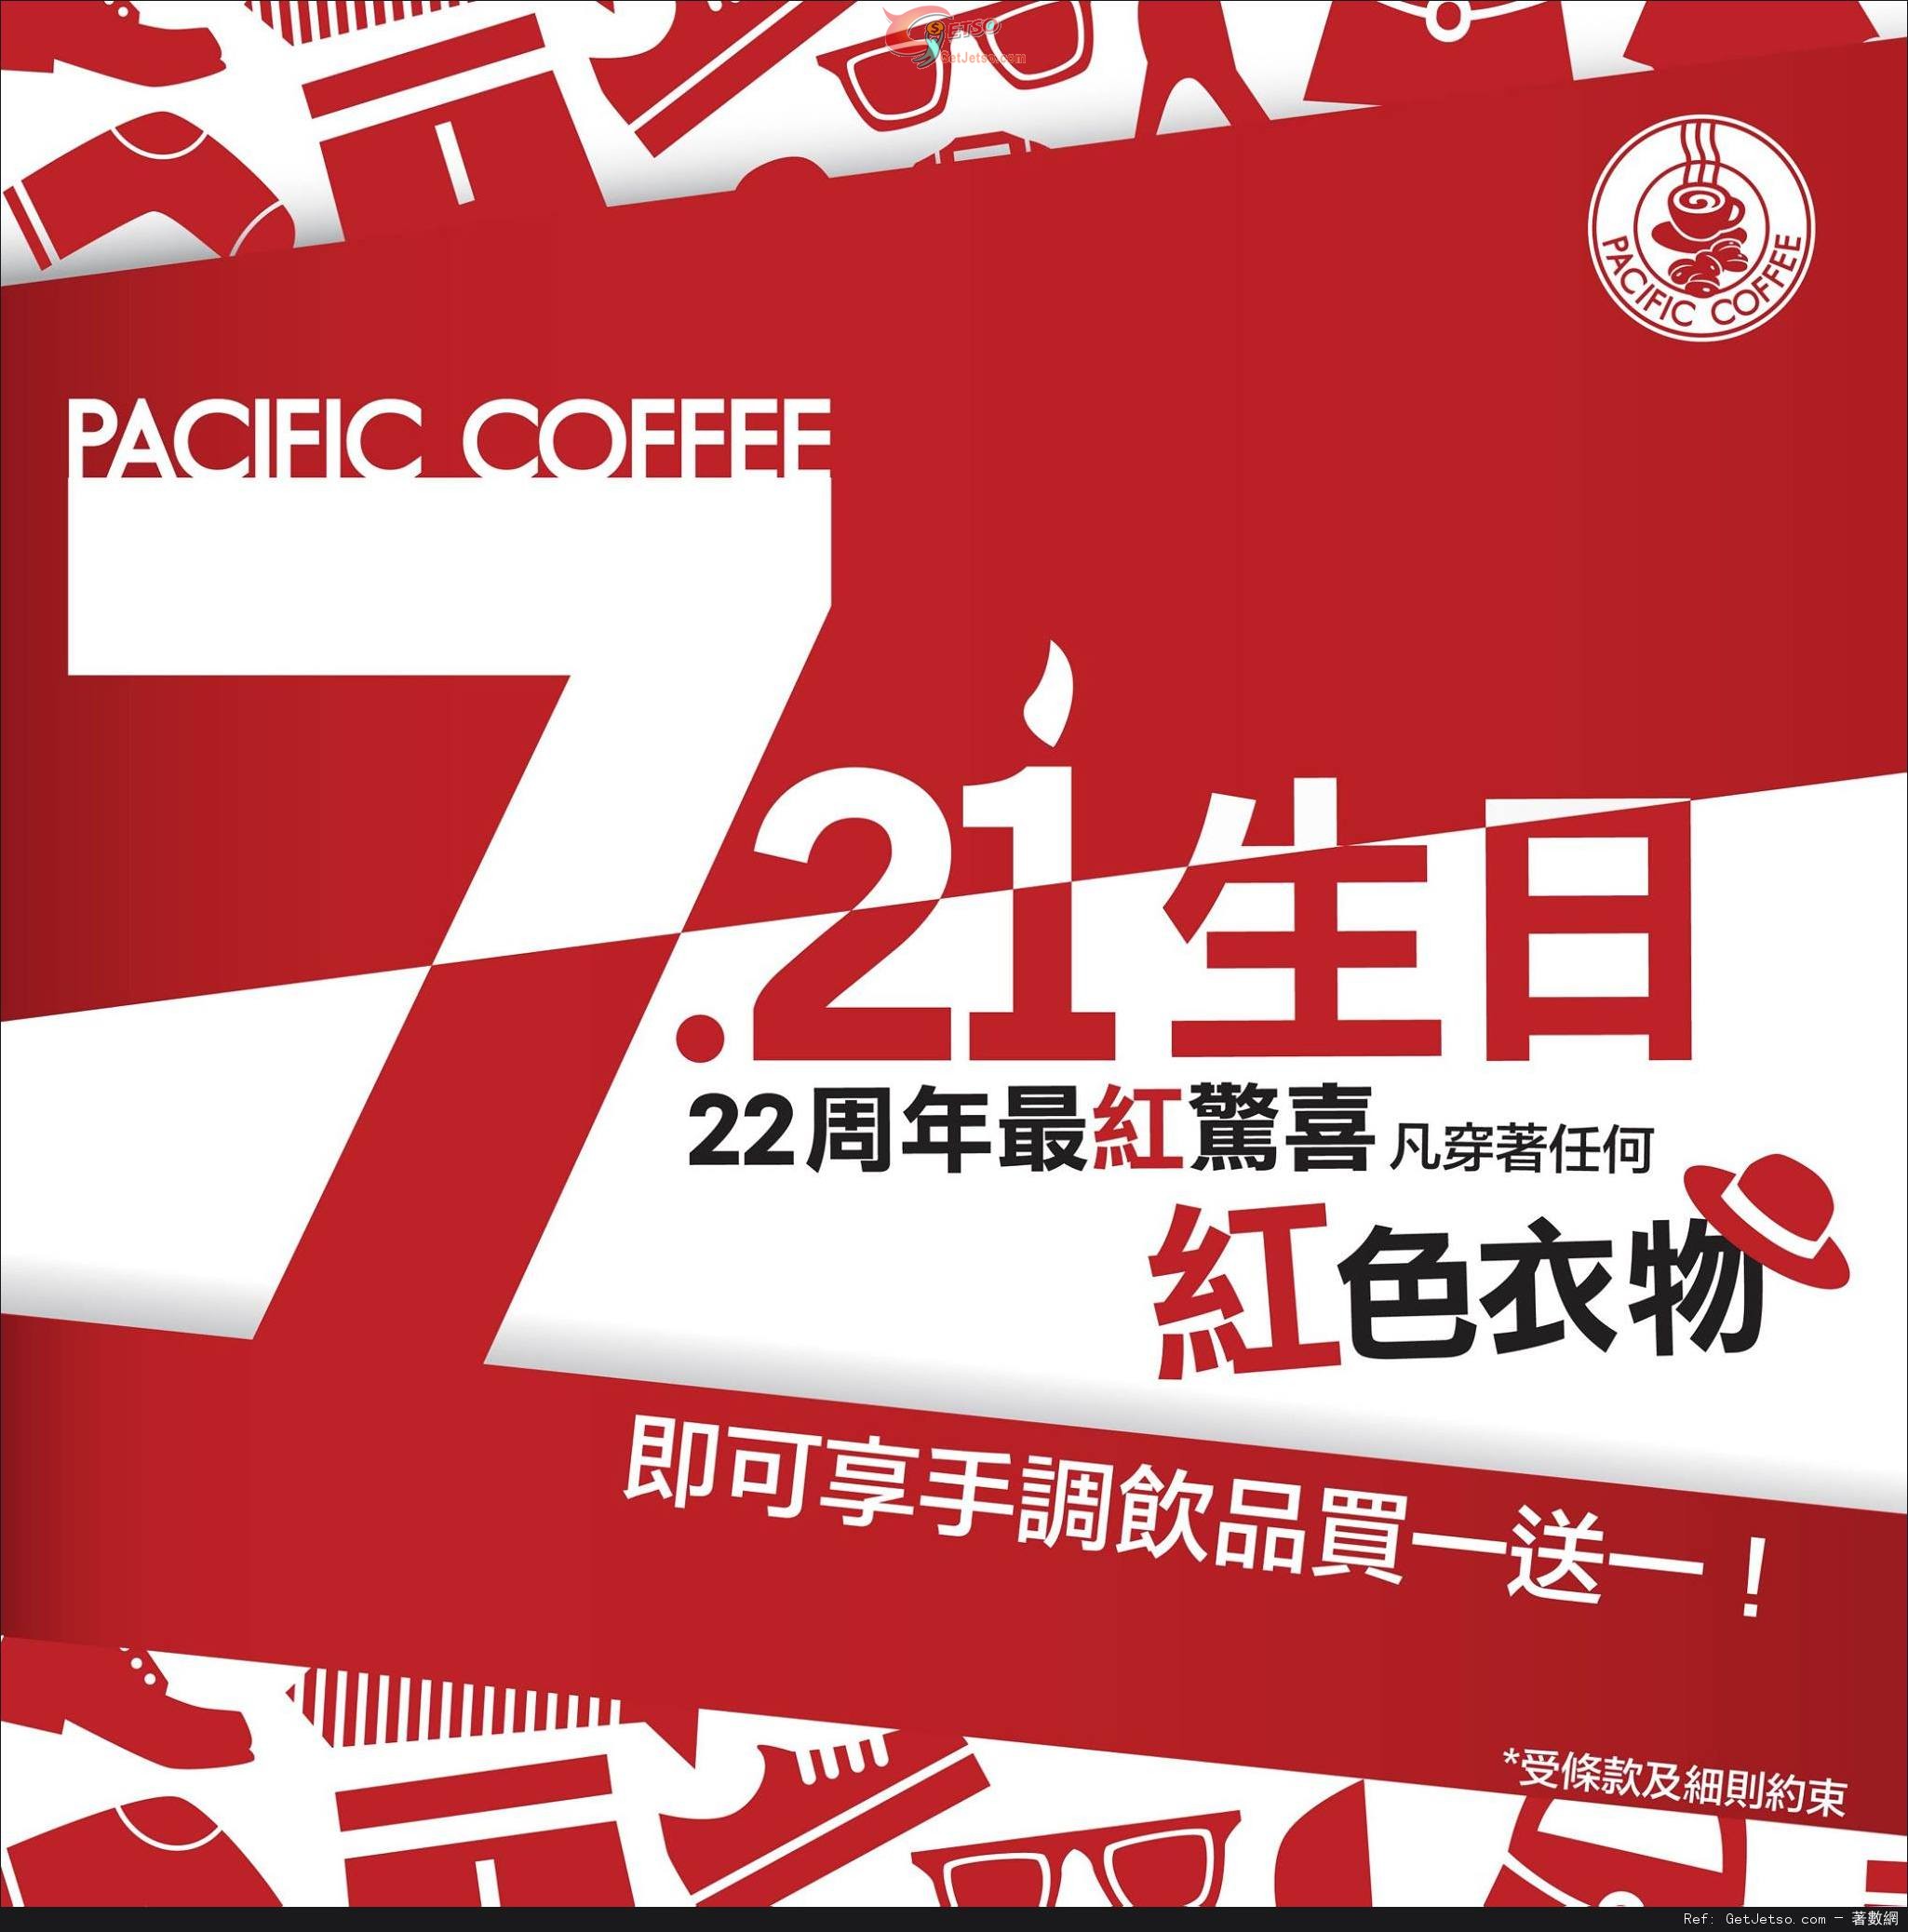 Pacific Coffee 穿著任何紅色衣物或身上配飾享手調飲品買1送1優惠(14年7月21日)圖片1